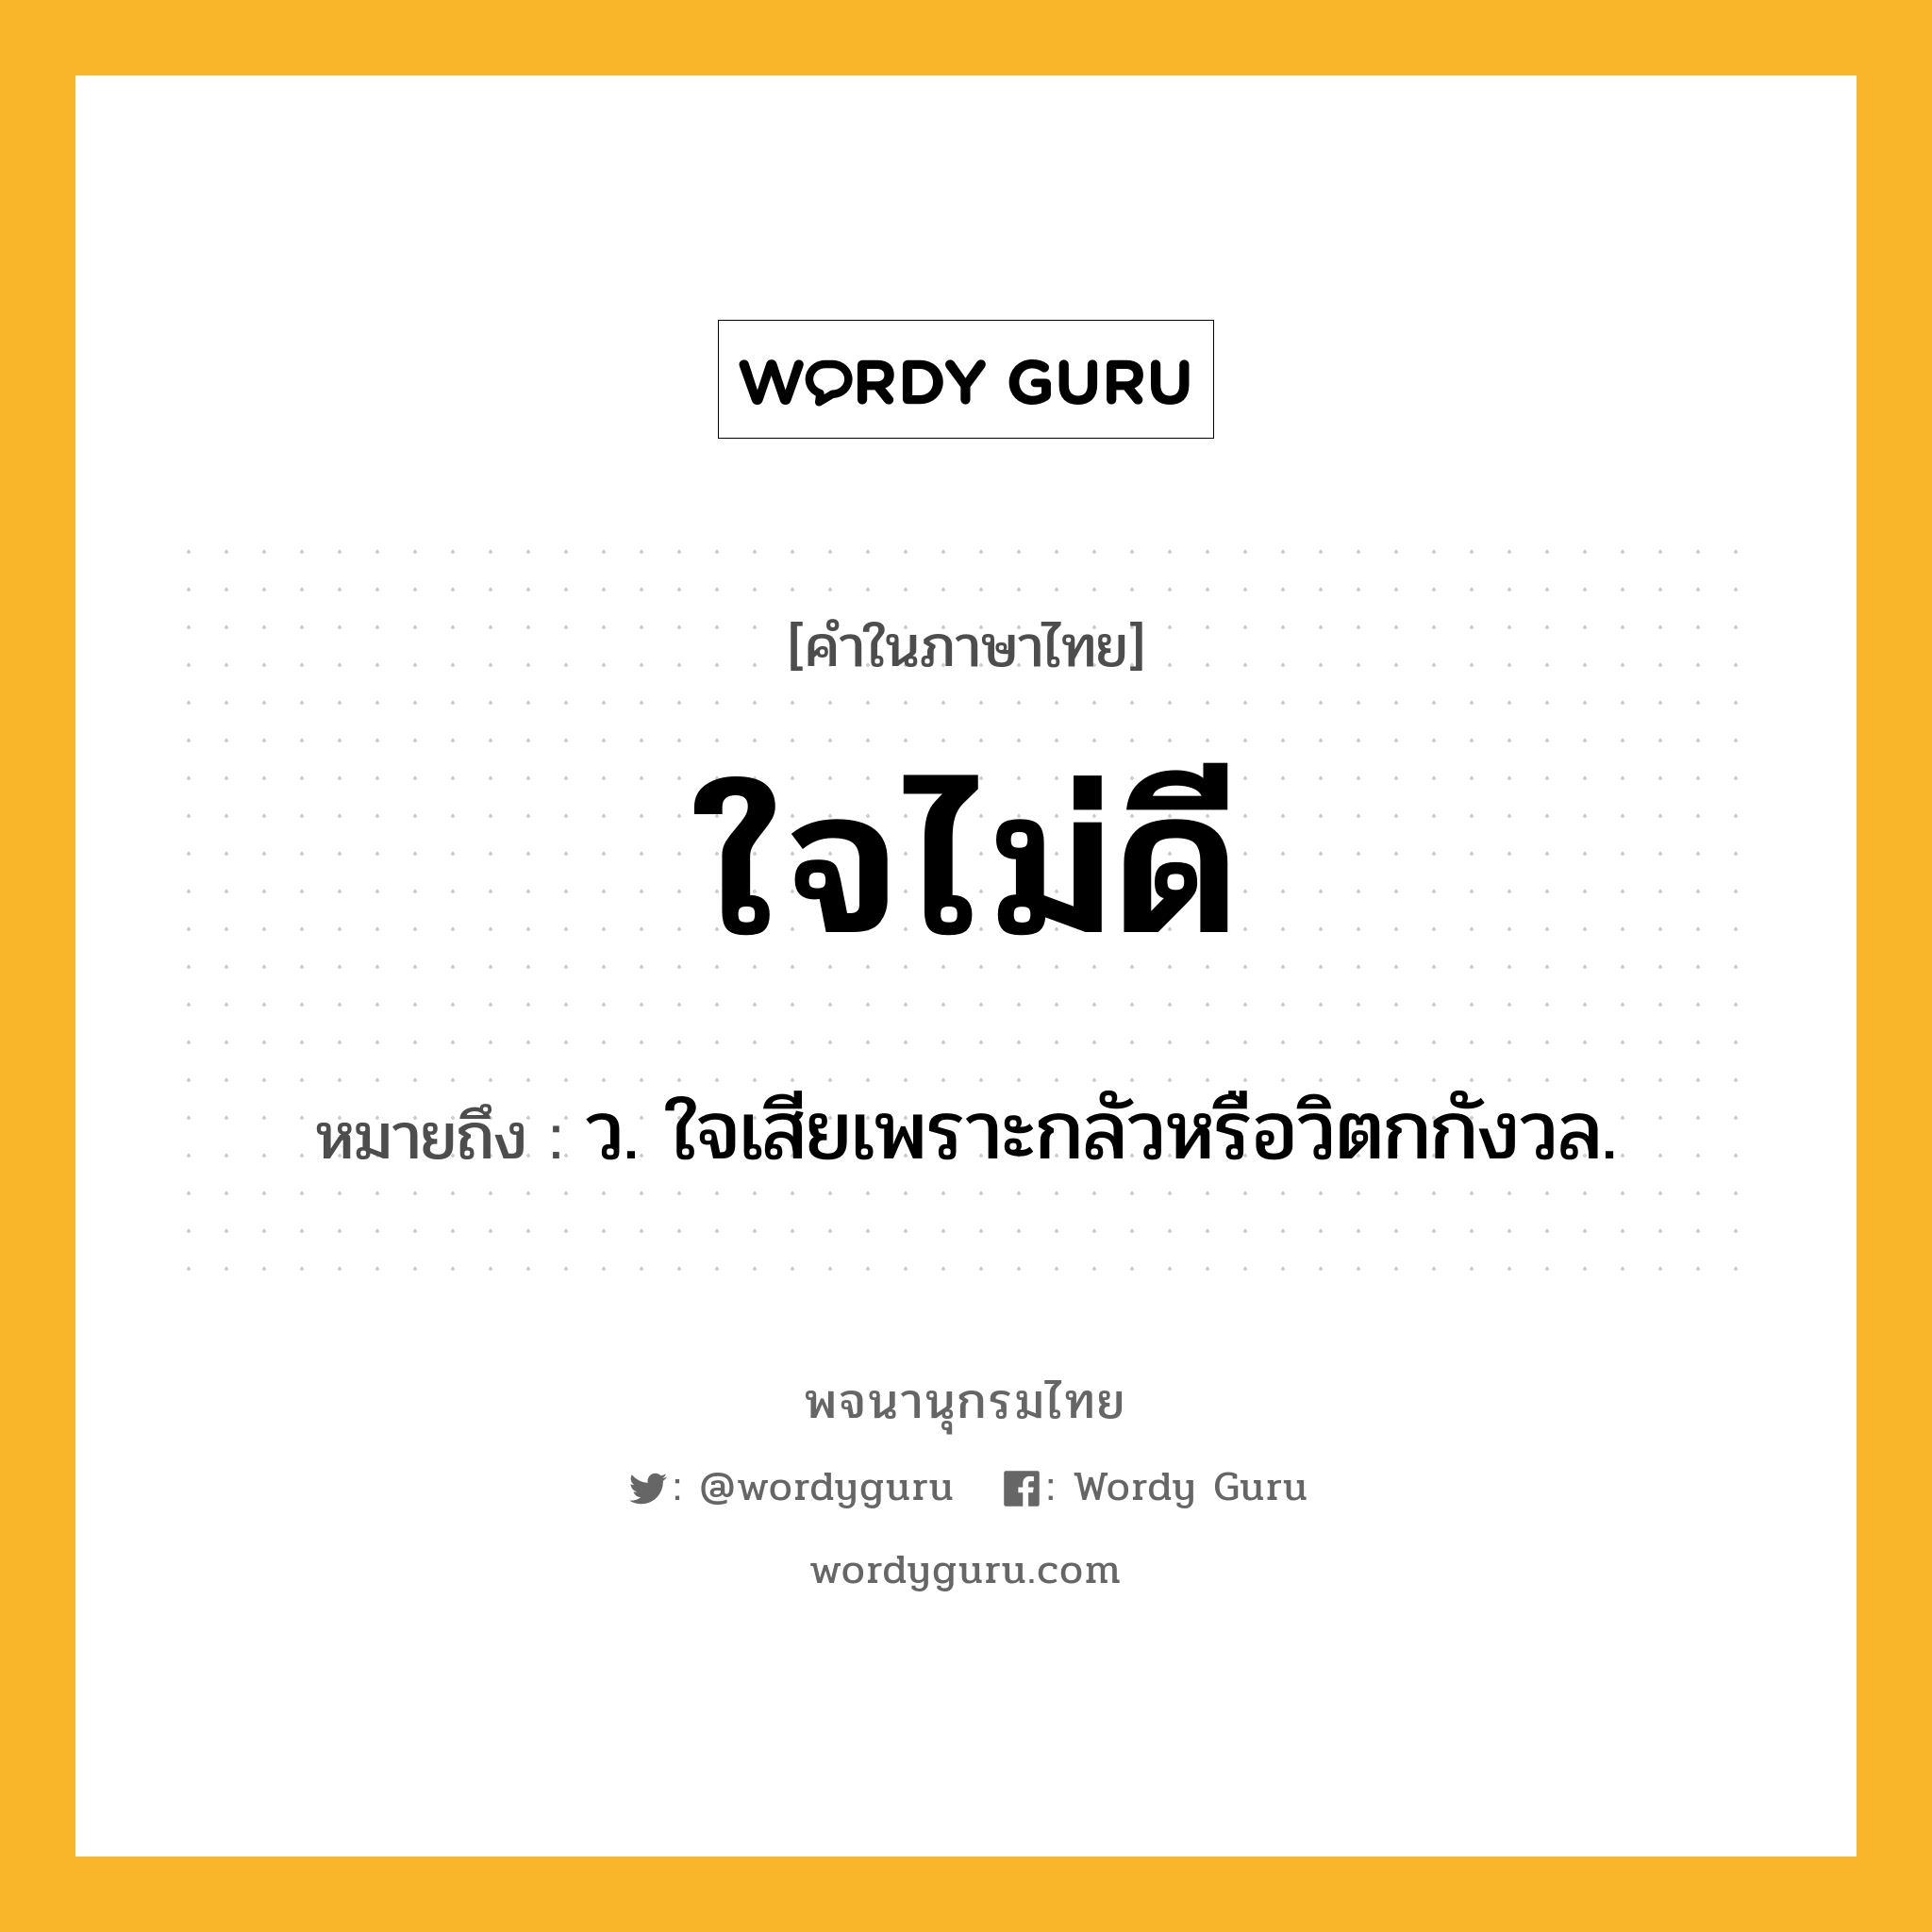 ใจไม่ดี ความหมาย หมายถึงอะไร?, คำในภาษาไทย ใจไม่ดี หมายถึง ว. ใจเสียเพราะกลัวหรือวิตกกังวล.